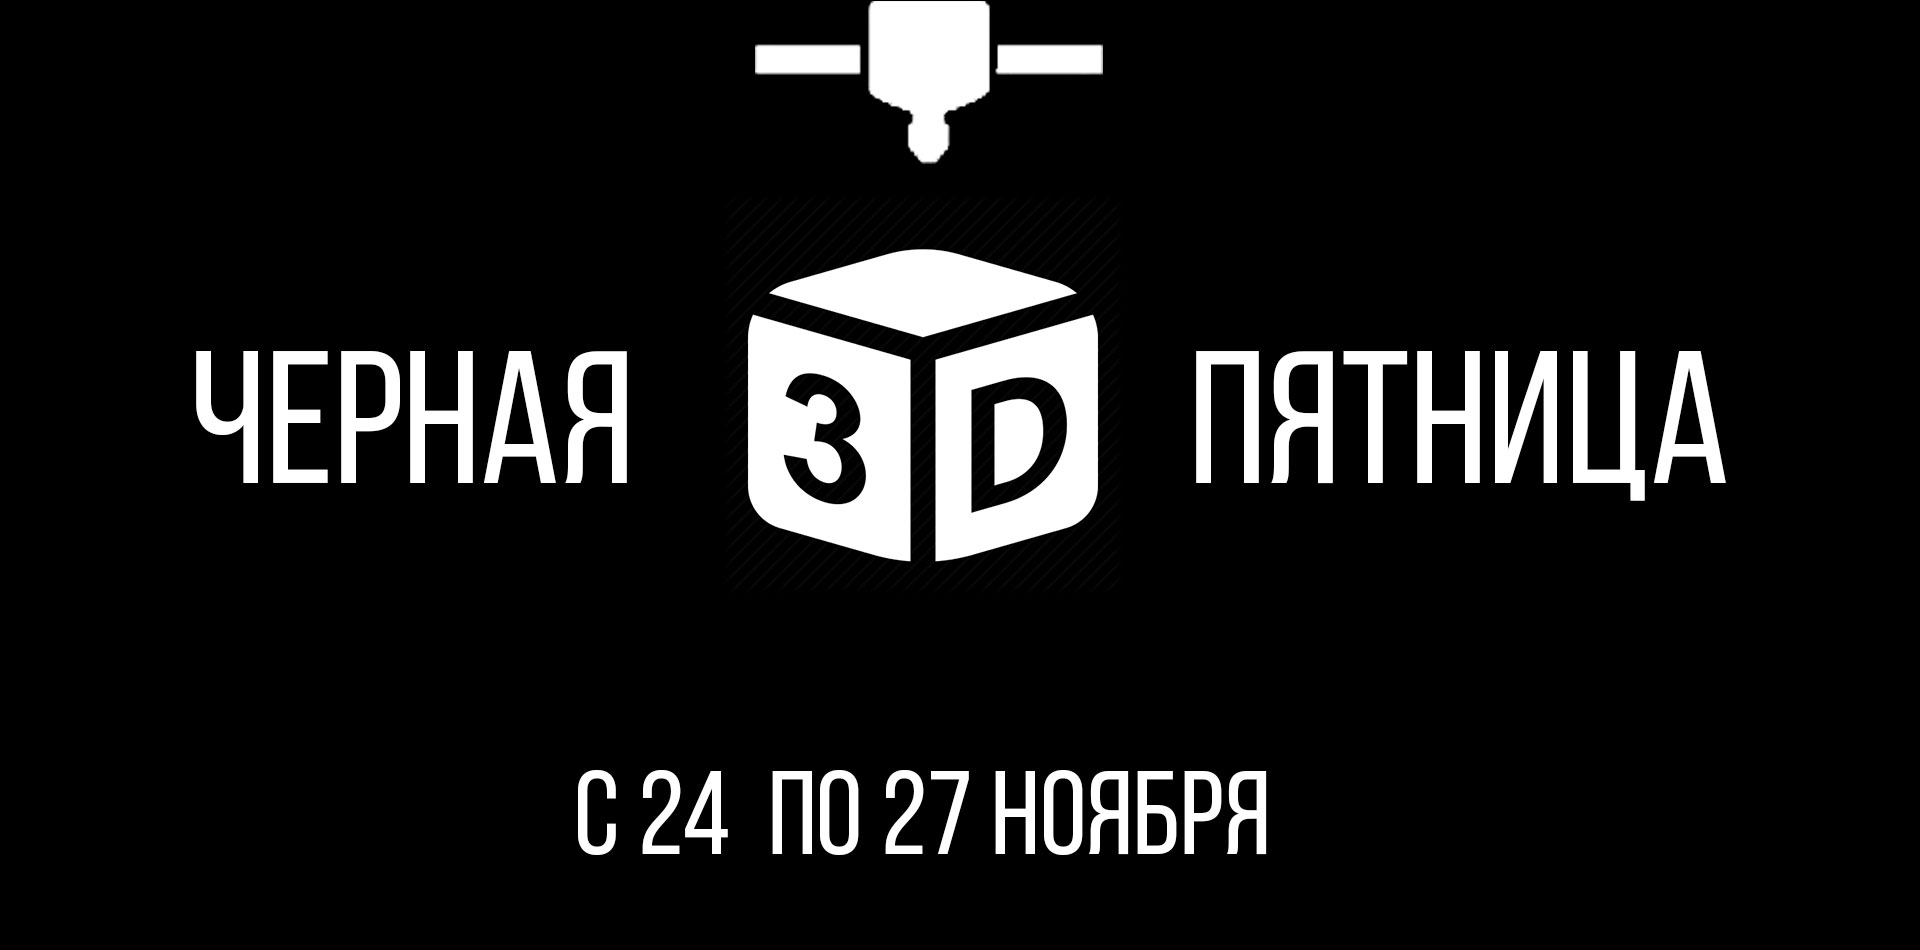 3D ПРИНТЕРЫ В АСТАНЕ